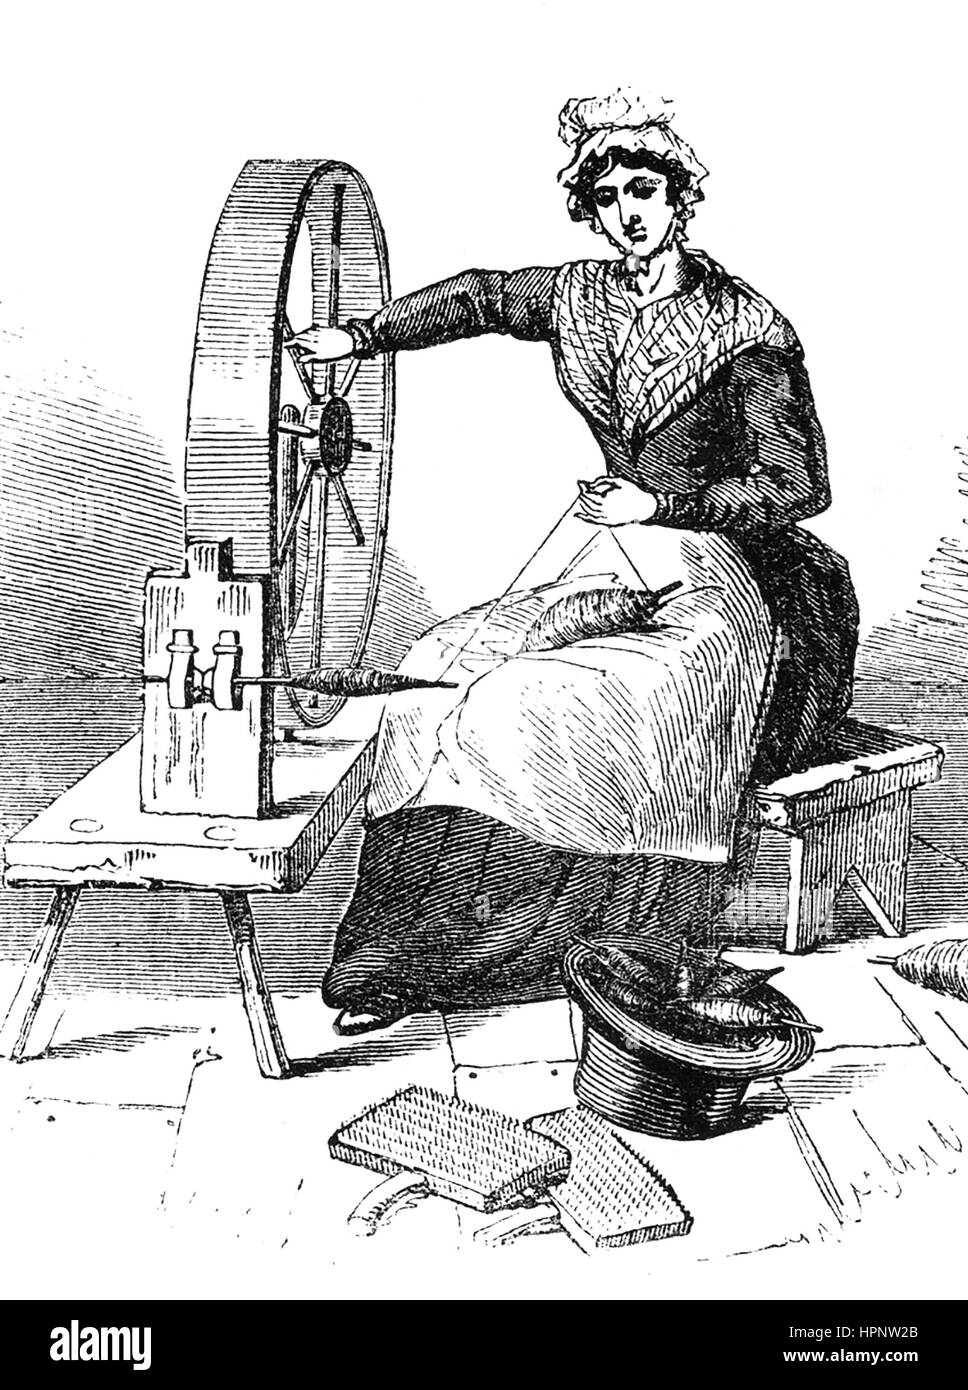 JERSEYWHEEL für Baumwolle und Wolle spinnen verwendet und ersetzt durch die Maschinen wie die Spinning Jenny während der industriellen Revolution. Kupferstich um 1800 Stockfoto